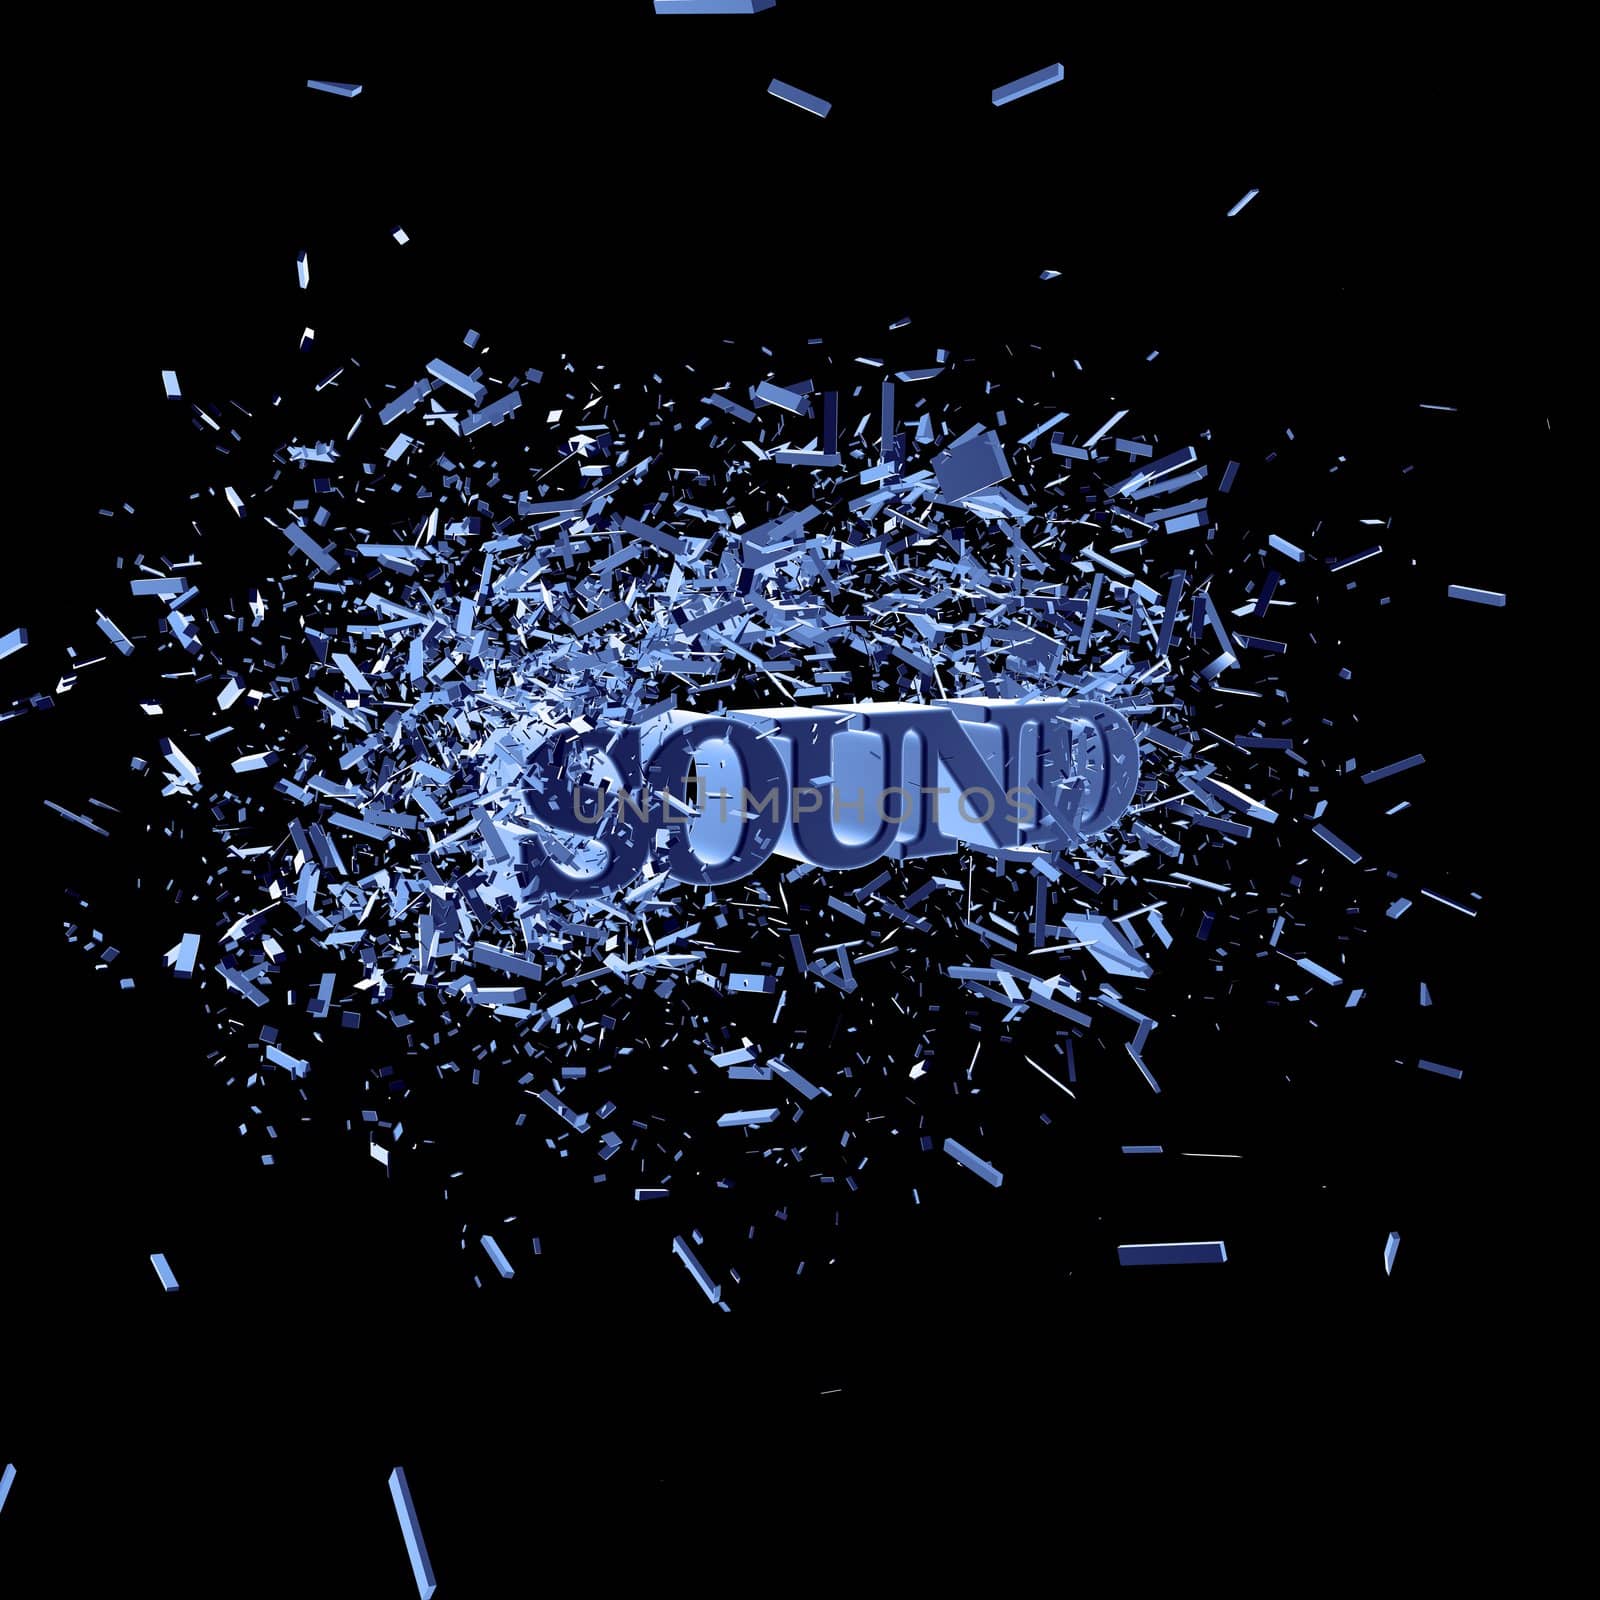 exploding word sound on black background - 3d illustration